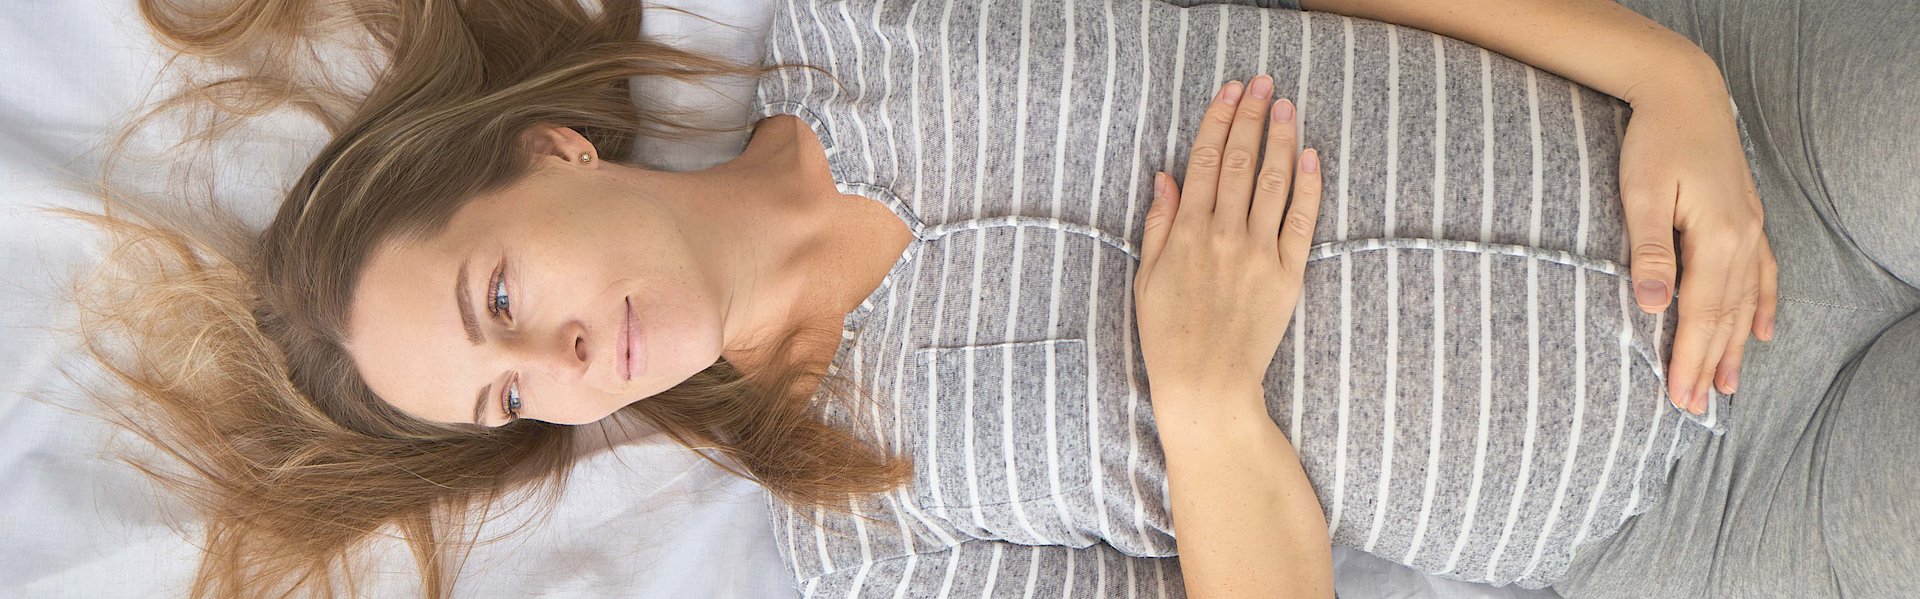 Eine schwangere blonde Frau liegt auf einem Bett. Mit beiden Händen umfasst sie ihren Bauch. Sie schaut nachdenklich.